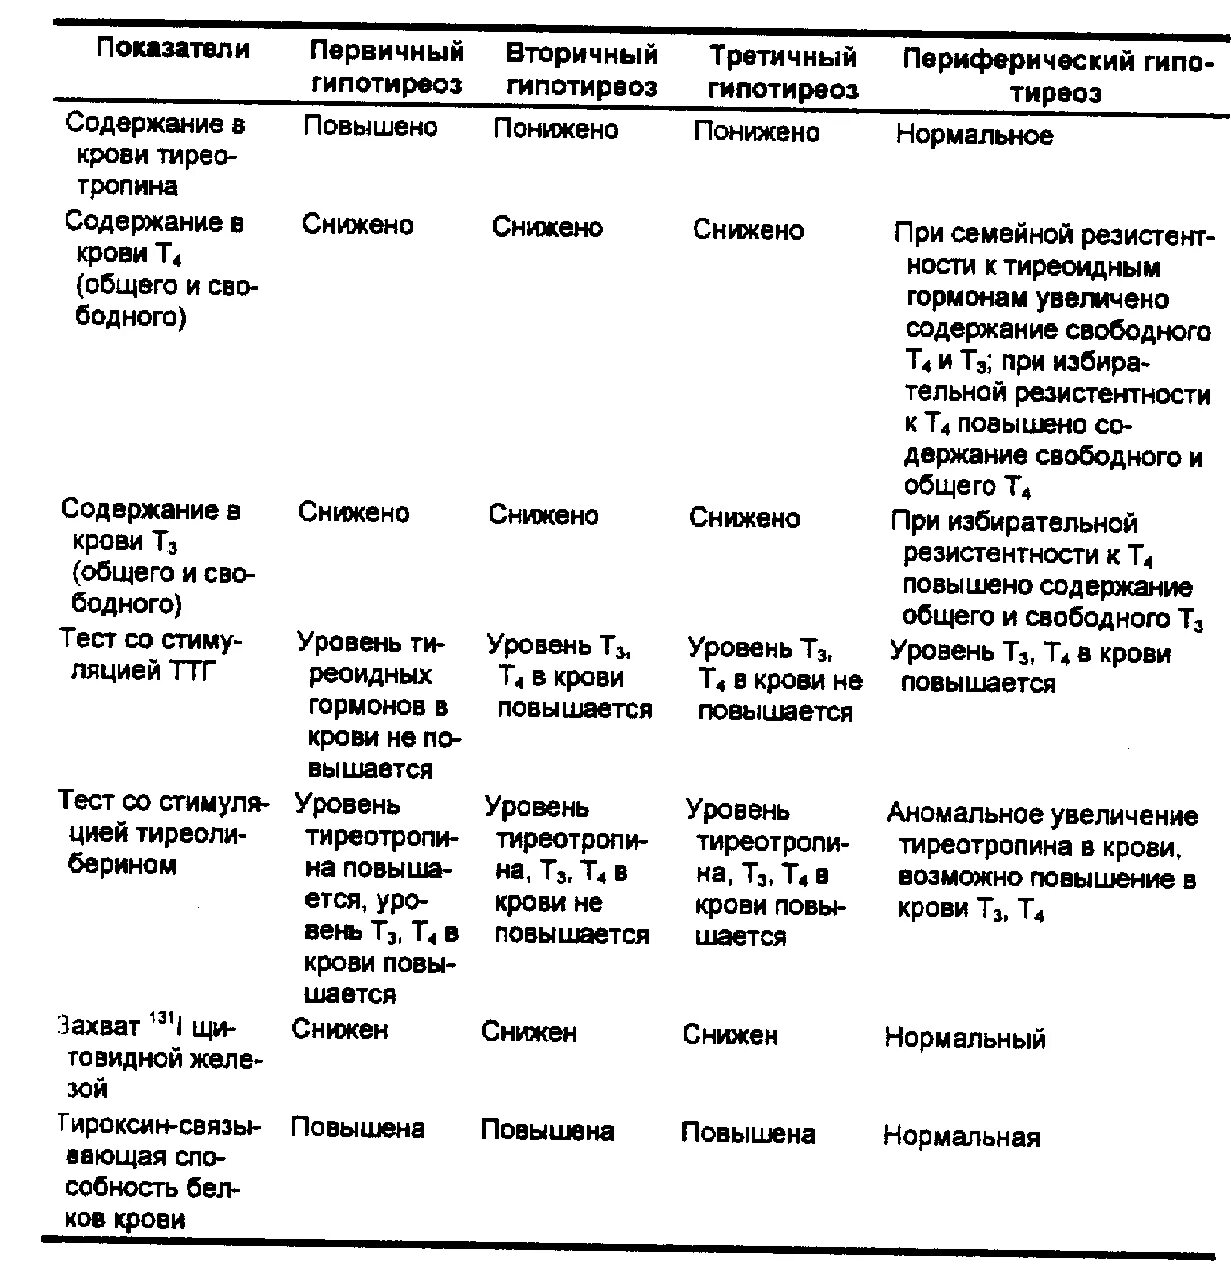 Дифференциальная диагностика тиреотоксикоза и гипотиреоза. Дифференциальная диагностика первичного и вторичного гипотиреоза. Дифференциальный диагноз гипотиреоза и тиреотоксикоза. Дифференциальный диагноз гипотиреоза таблица.